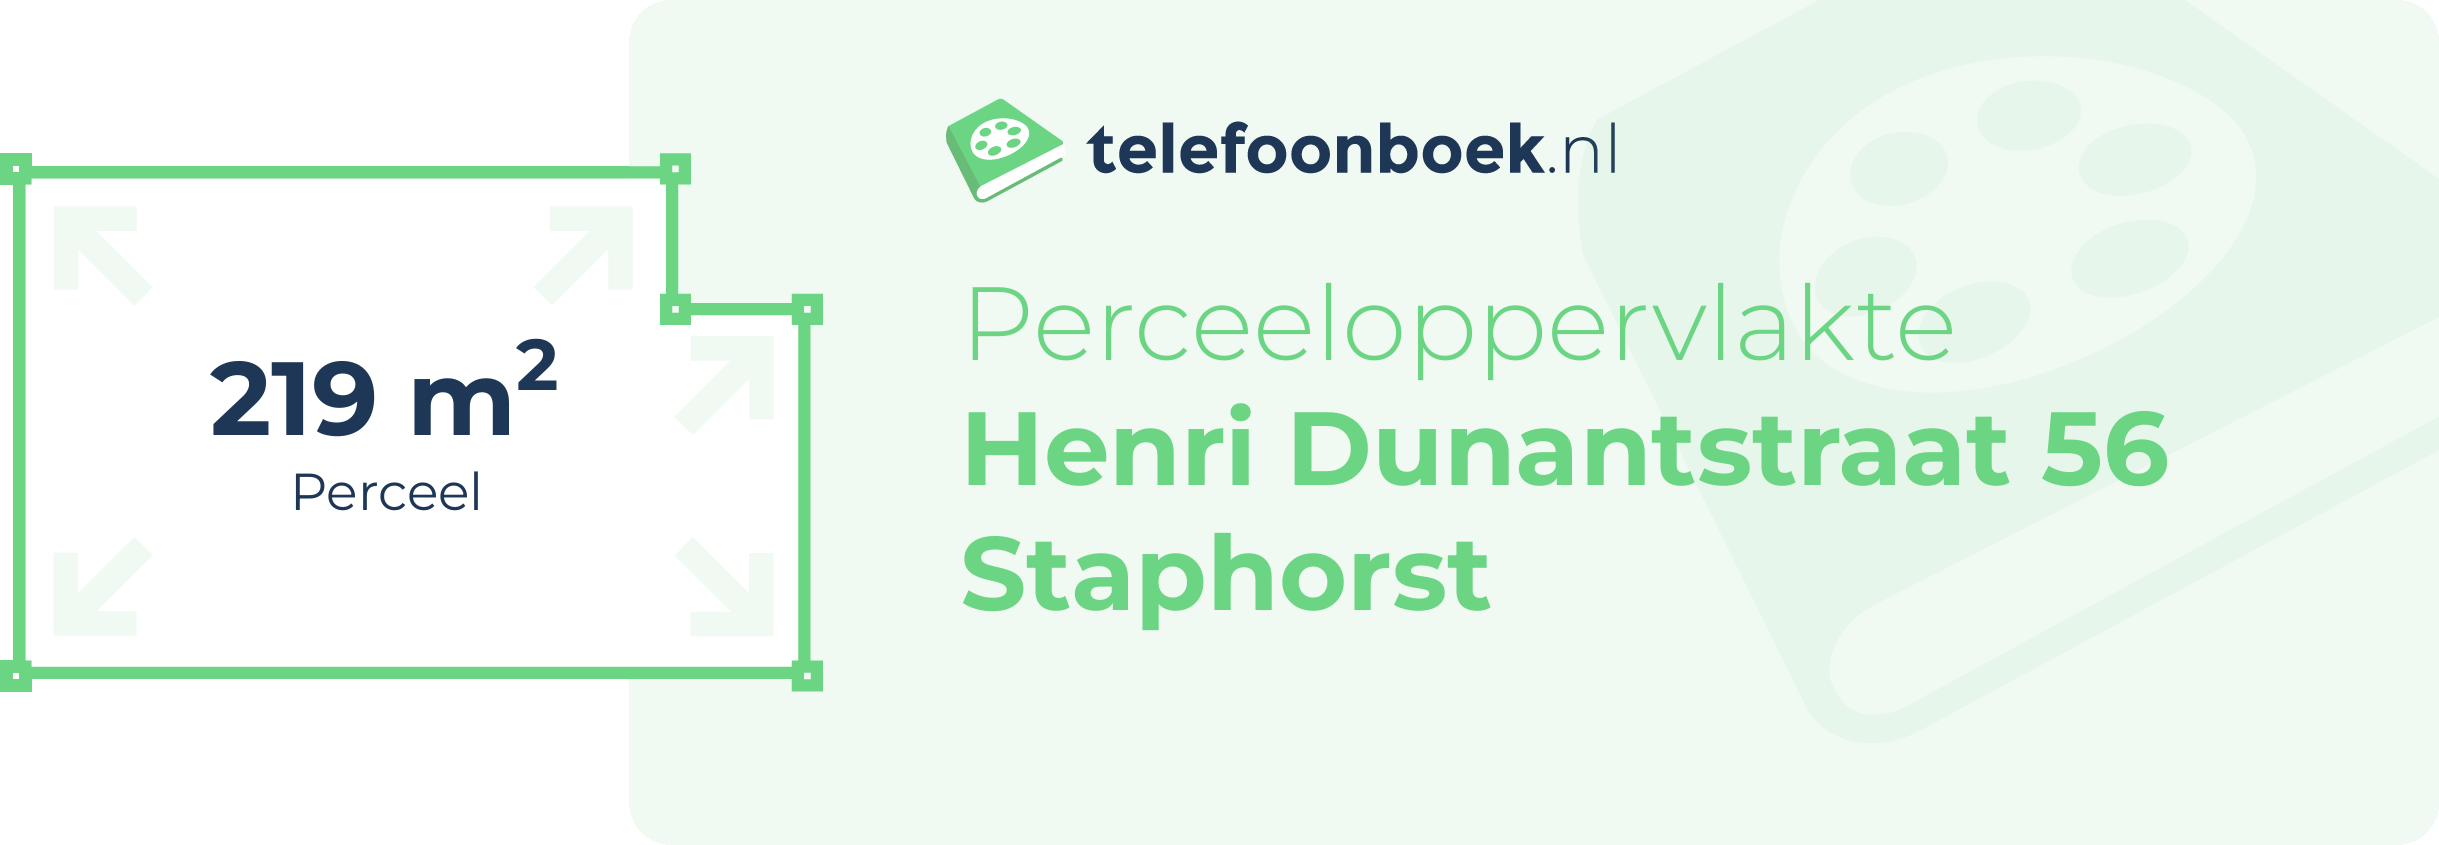 Perceeloppervlakte Henri Dunantstraat 56 Staphorst